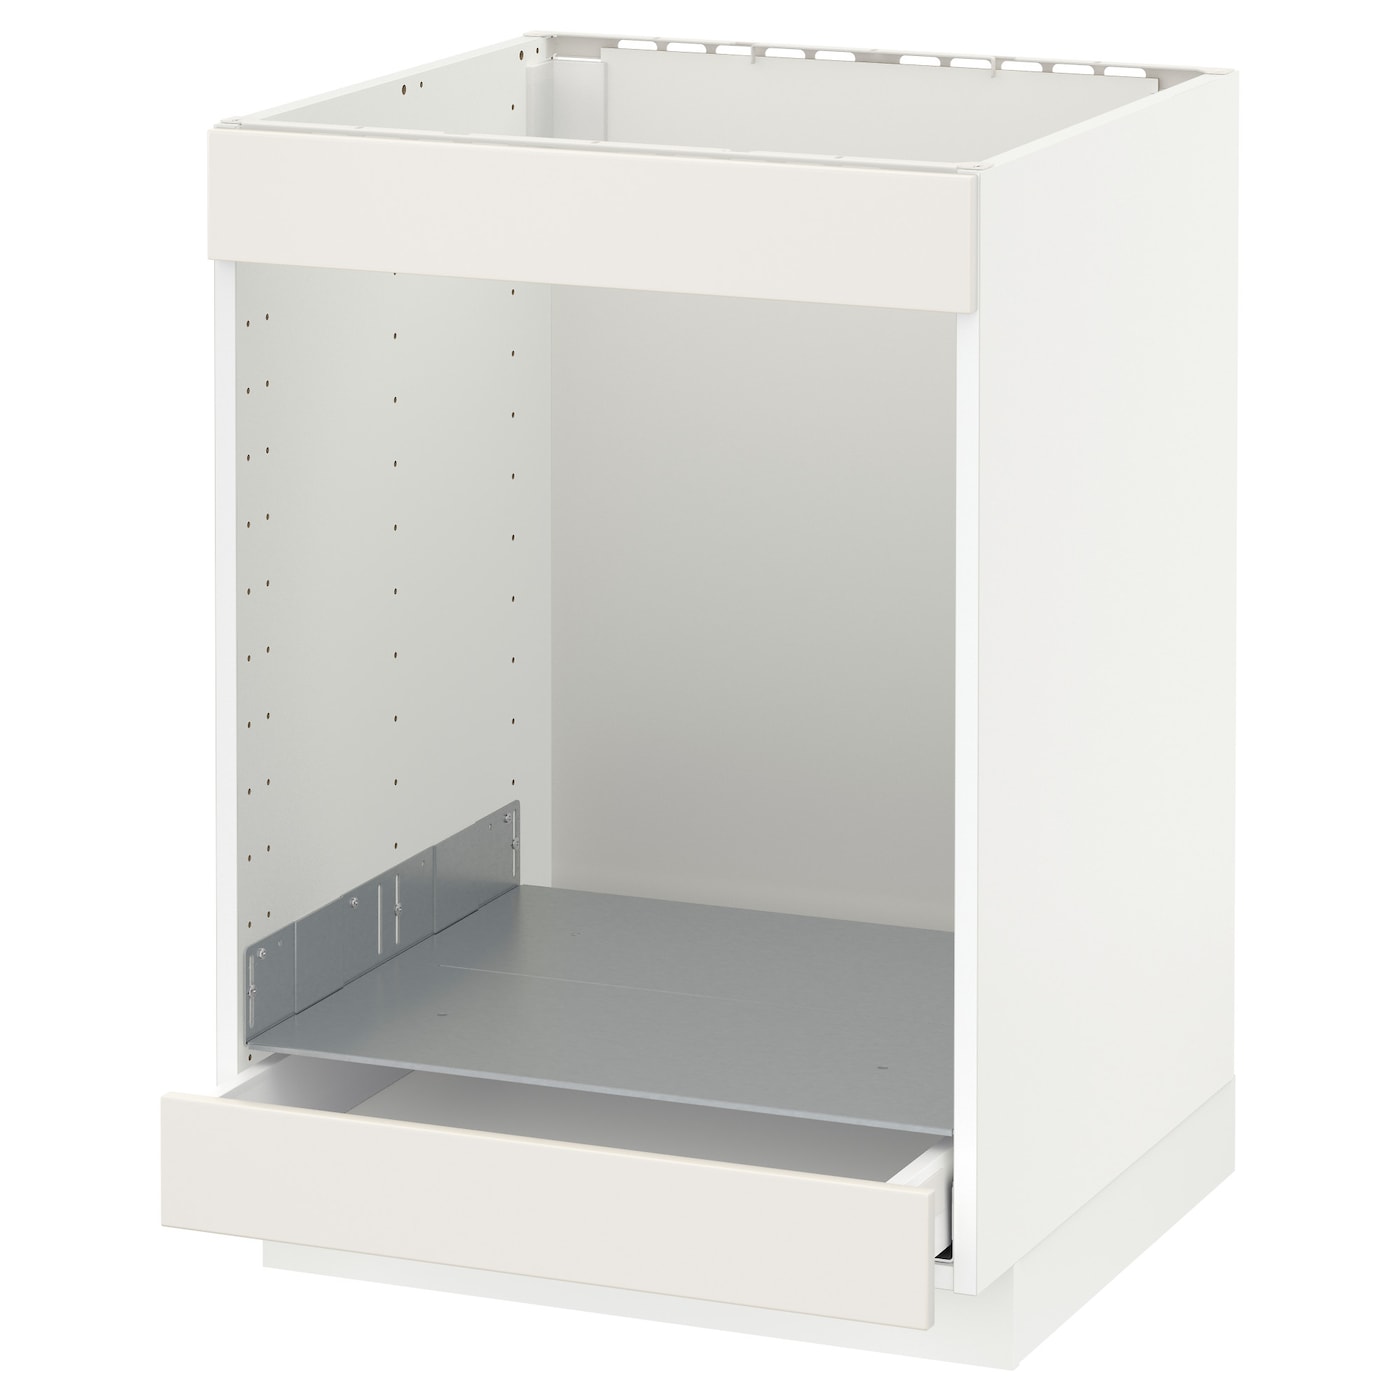 Шкаф для встроенной техники - IKEA METOD MAXIMERA, 88x62x60см, белый/серый, МЕТОД МАКСИМЕРА ИКЕА